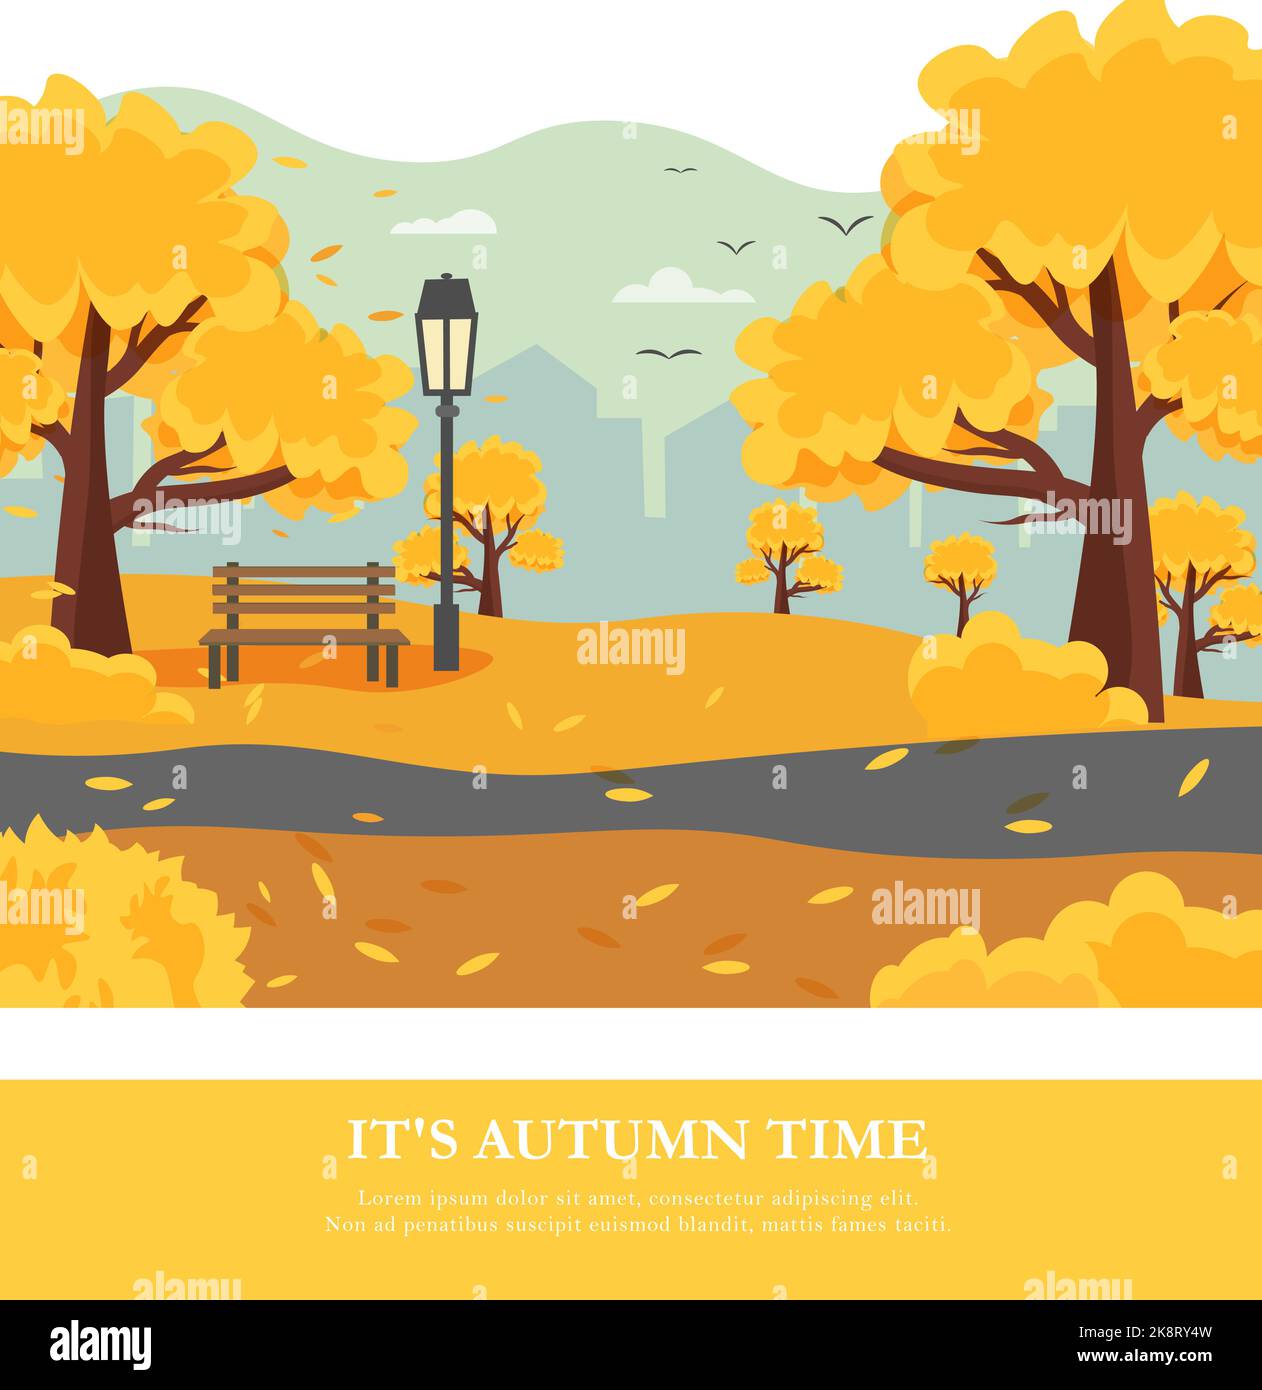 Postkartenvorlage mit städtischer Herbstlandschaft - Bäume im Park, eine Bank und eine Laterne, gefallene Blätter und ein Panorama der Stadt. Vektorzeichnung. Fotolia Stock Vektor